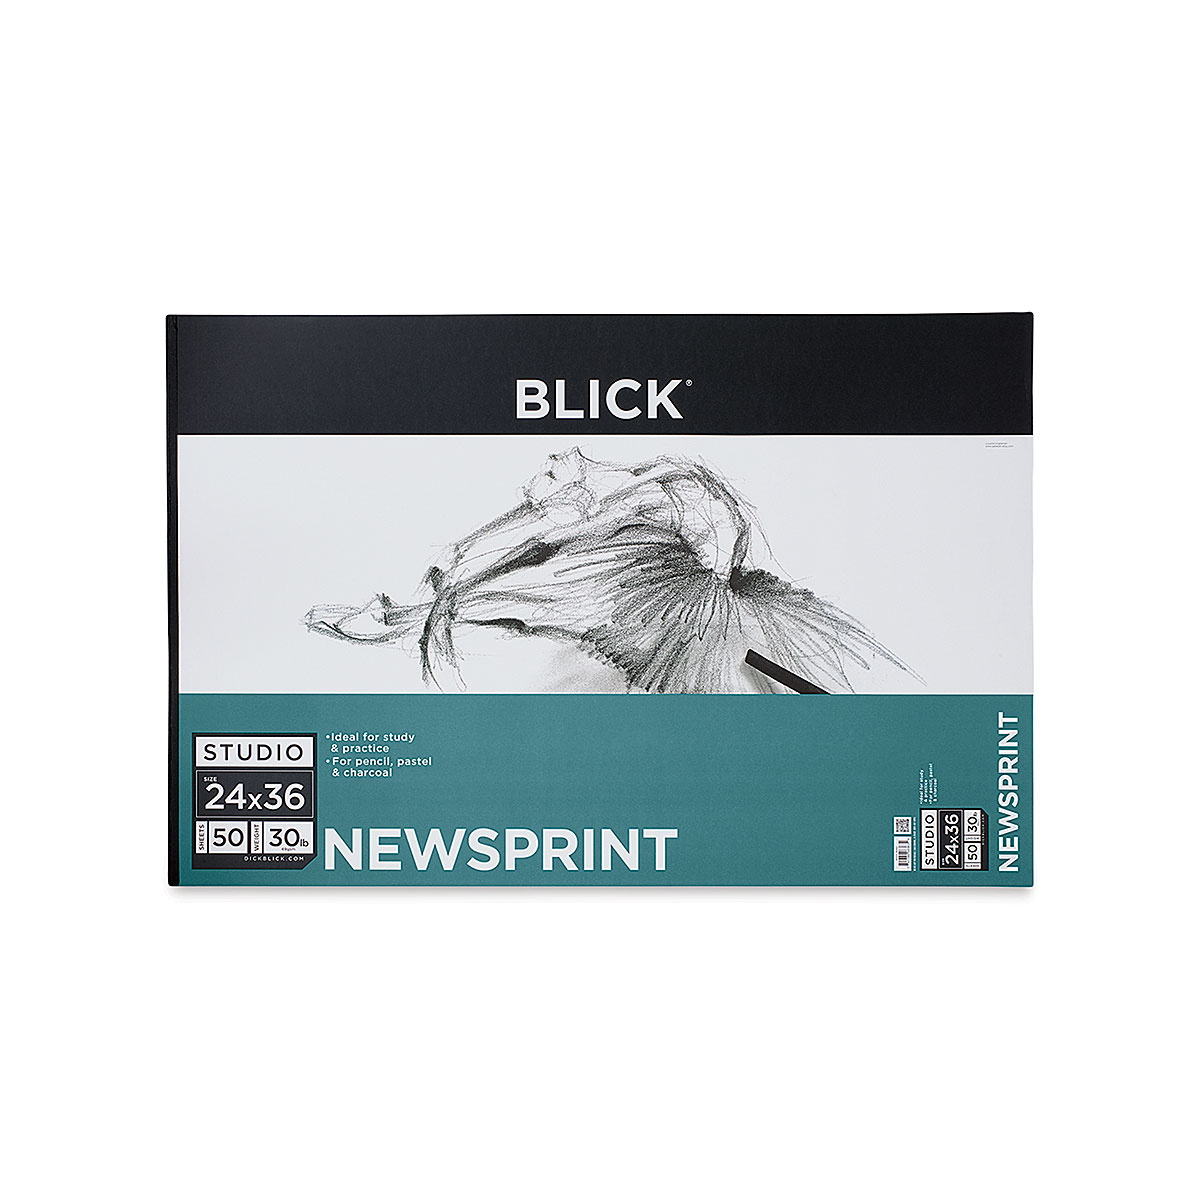 Blick Studio Tracing Paper Pad - 19 x 24, 50 Sheets